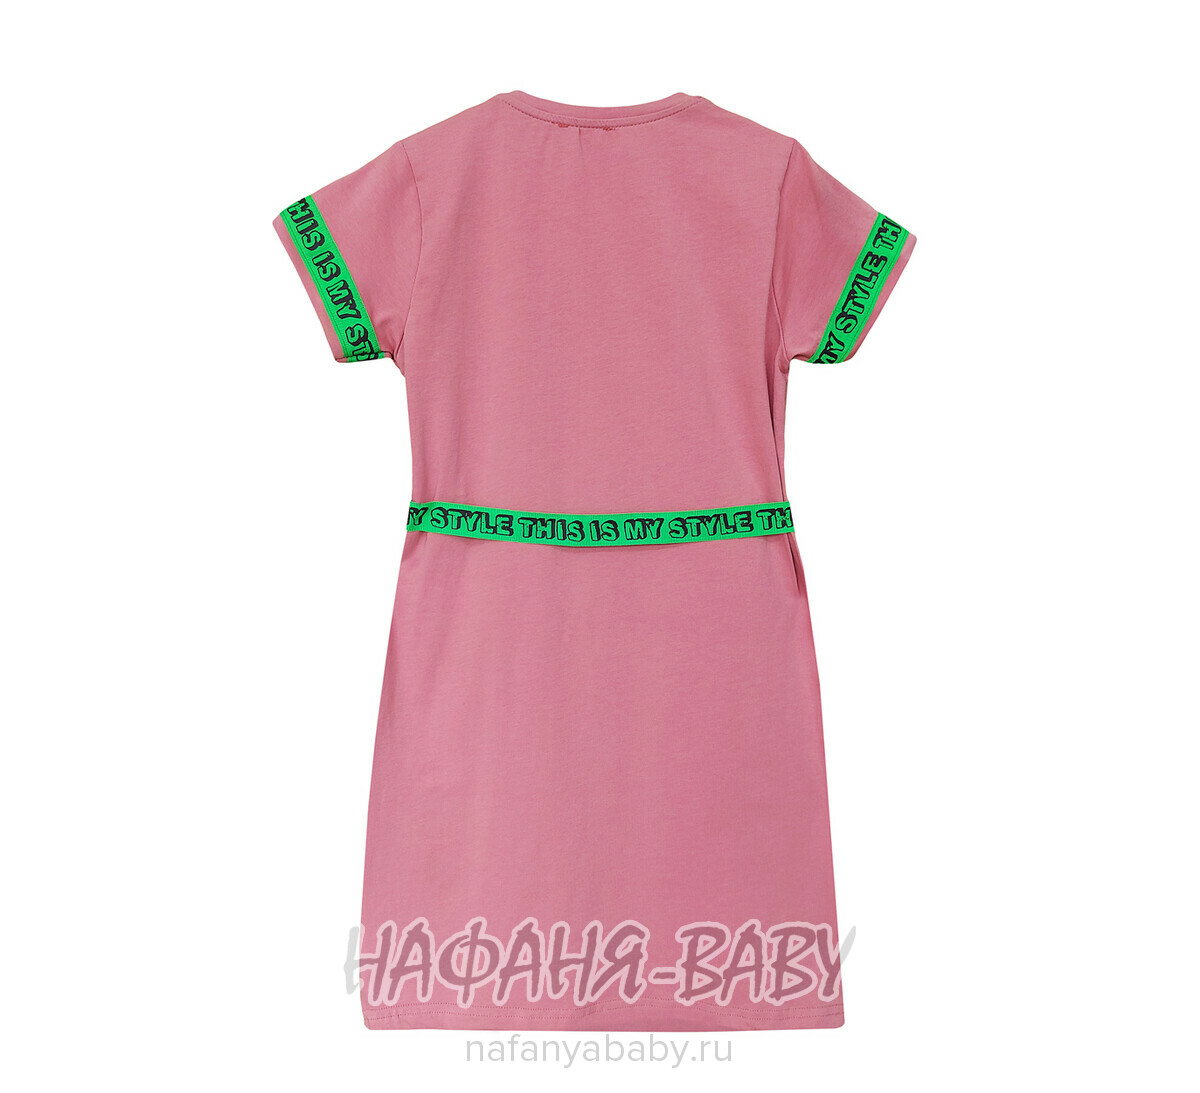 Платье с пояском OWANO арт: 3343 для девочки, 10-15 лет, цвет чайная роза, оптом Турция